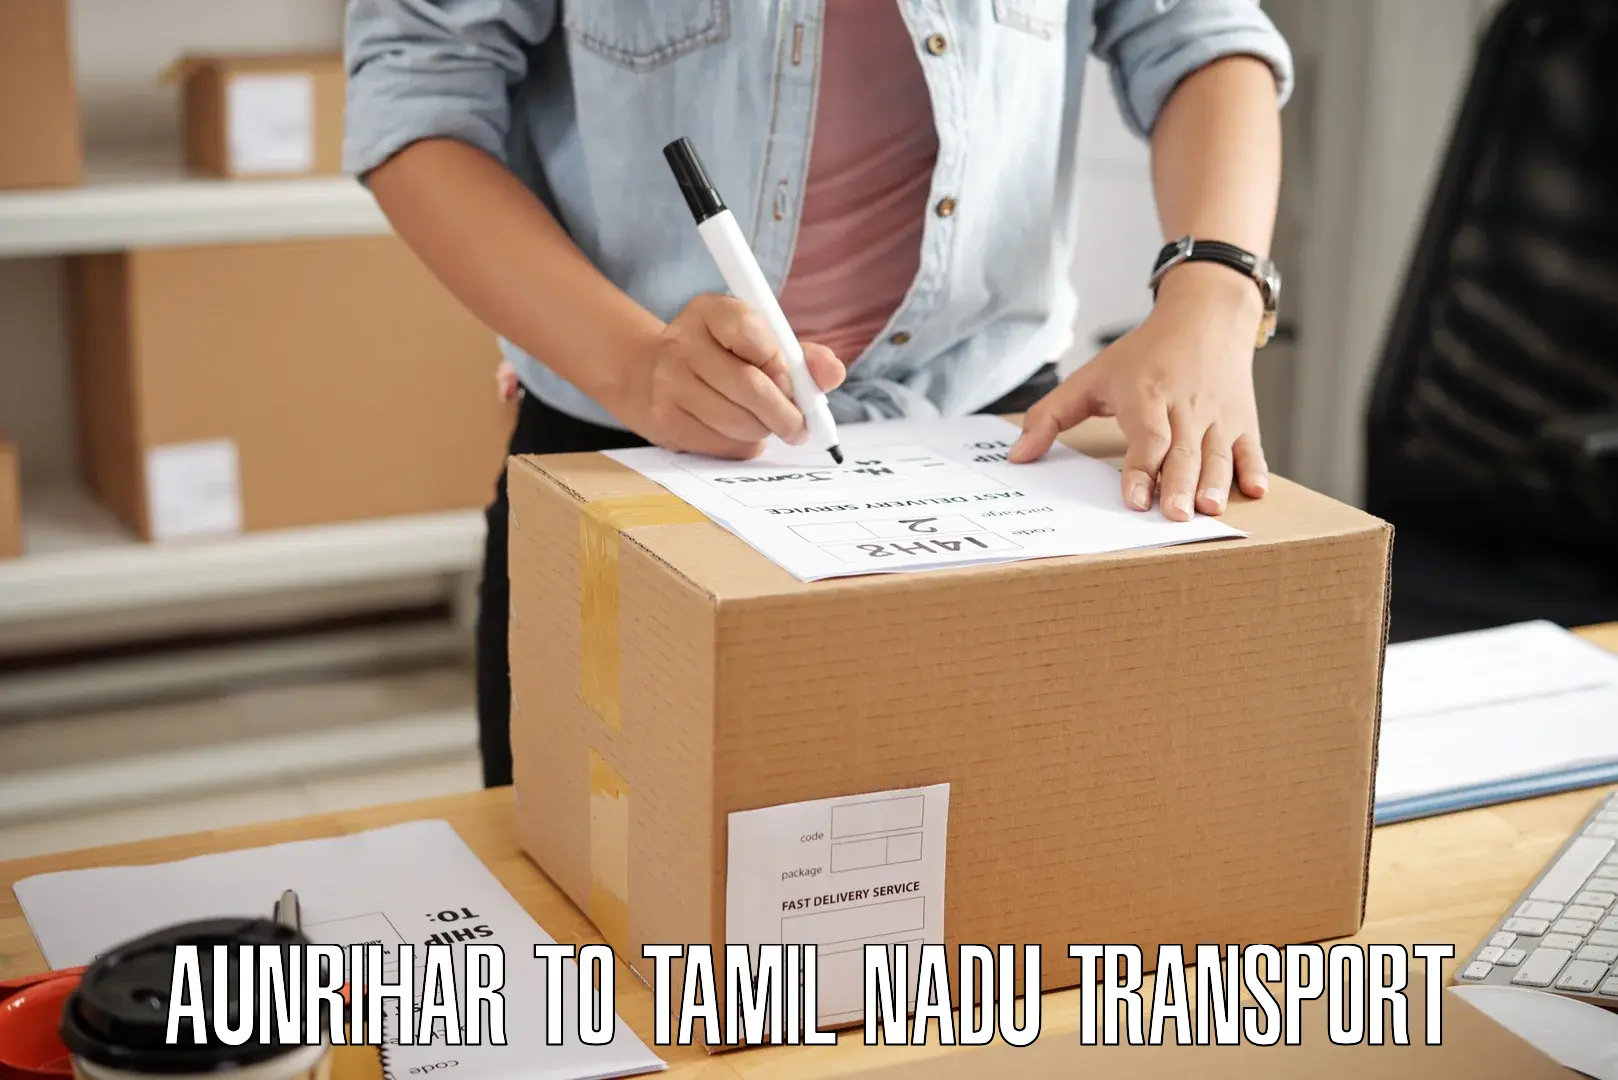 Daily parcel service transport Aunrihar to Perambur